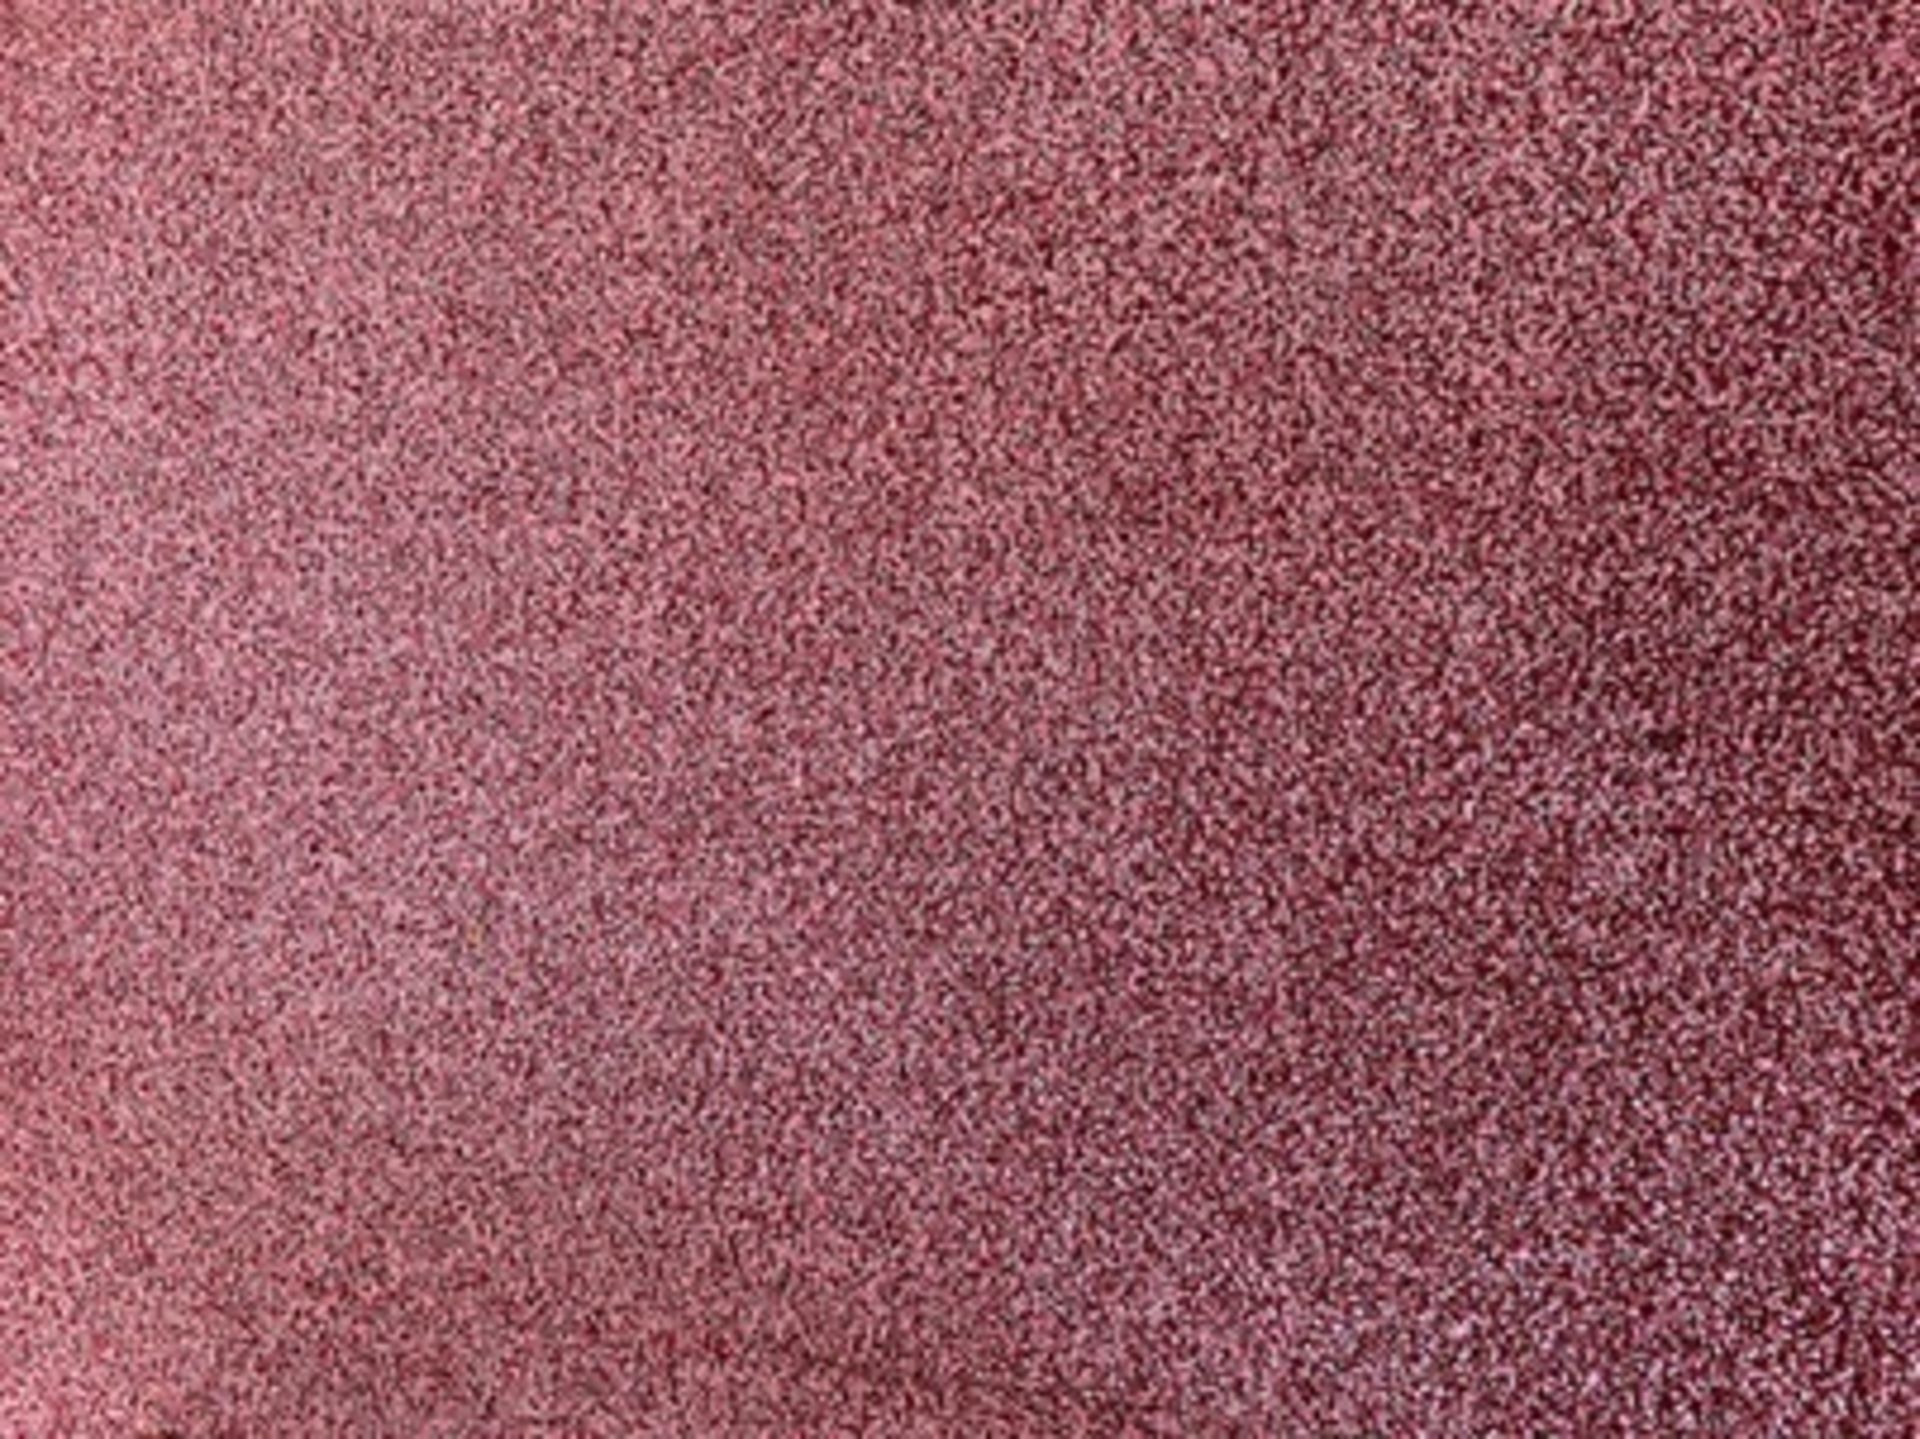 Pink carpet tiles 2.96m x 2.14m - Image 2 of 2